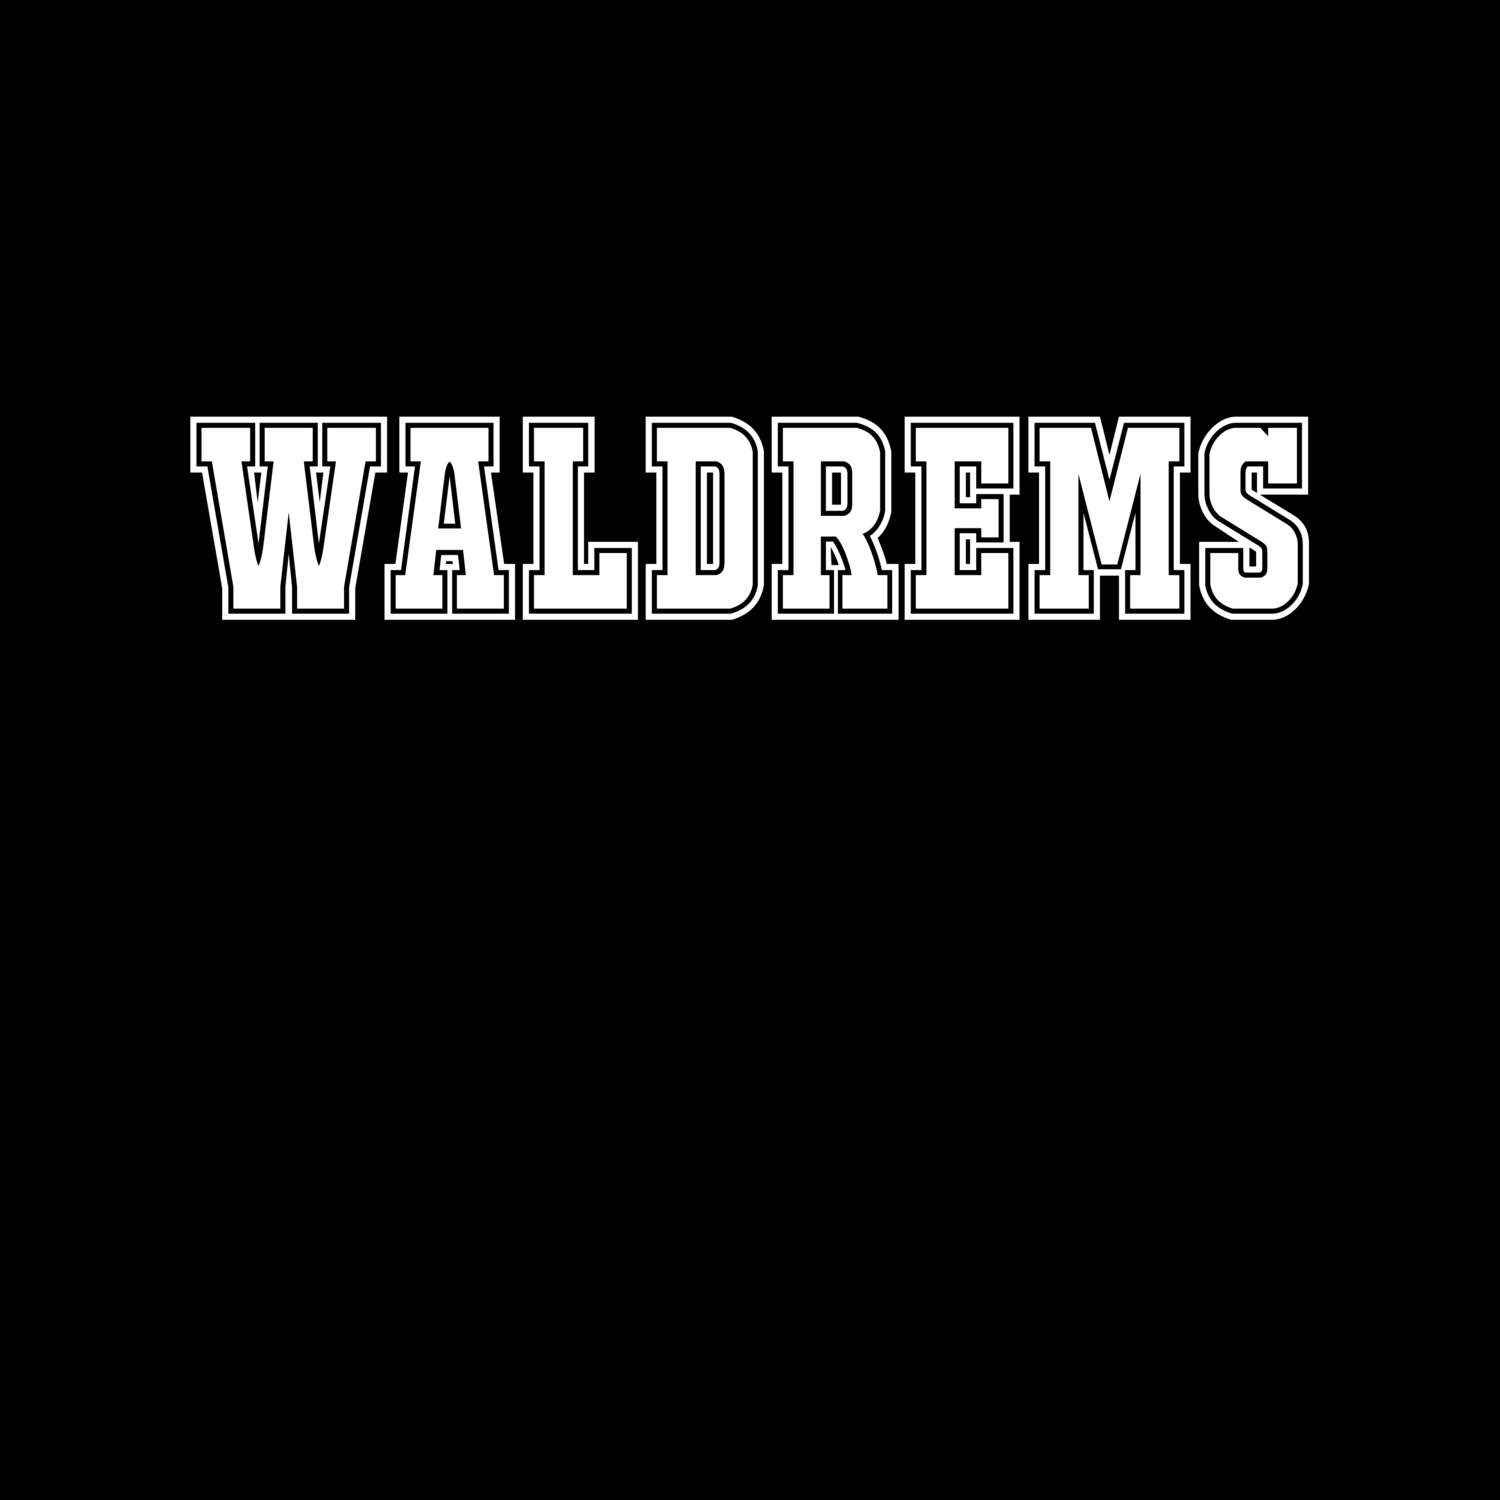 Waldrems T-Shirt »Classic«